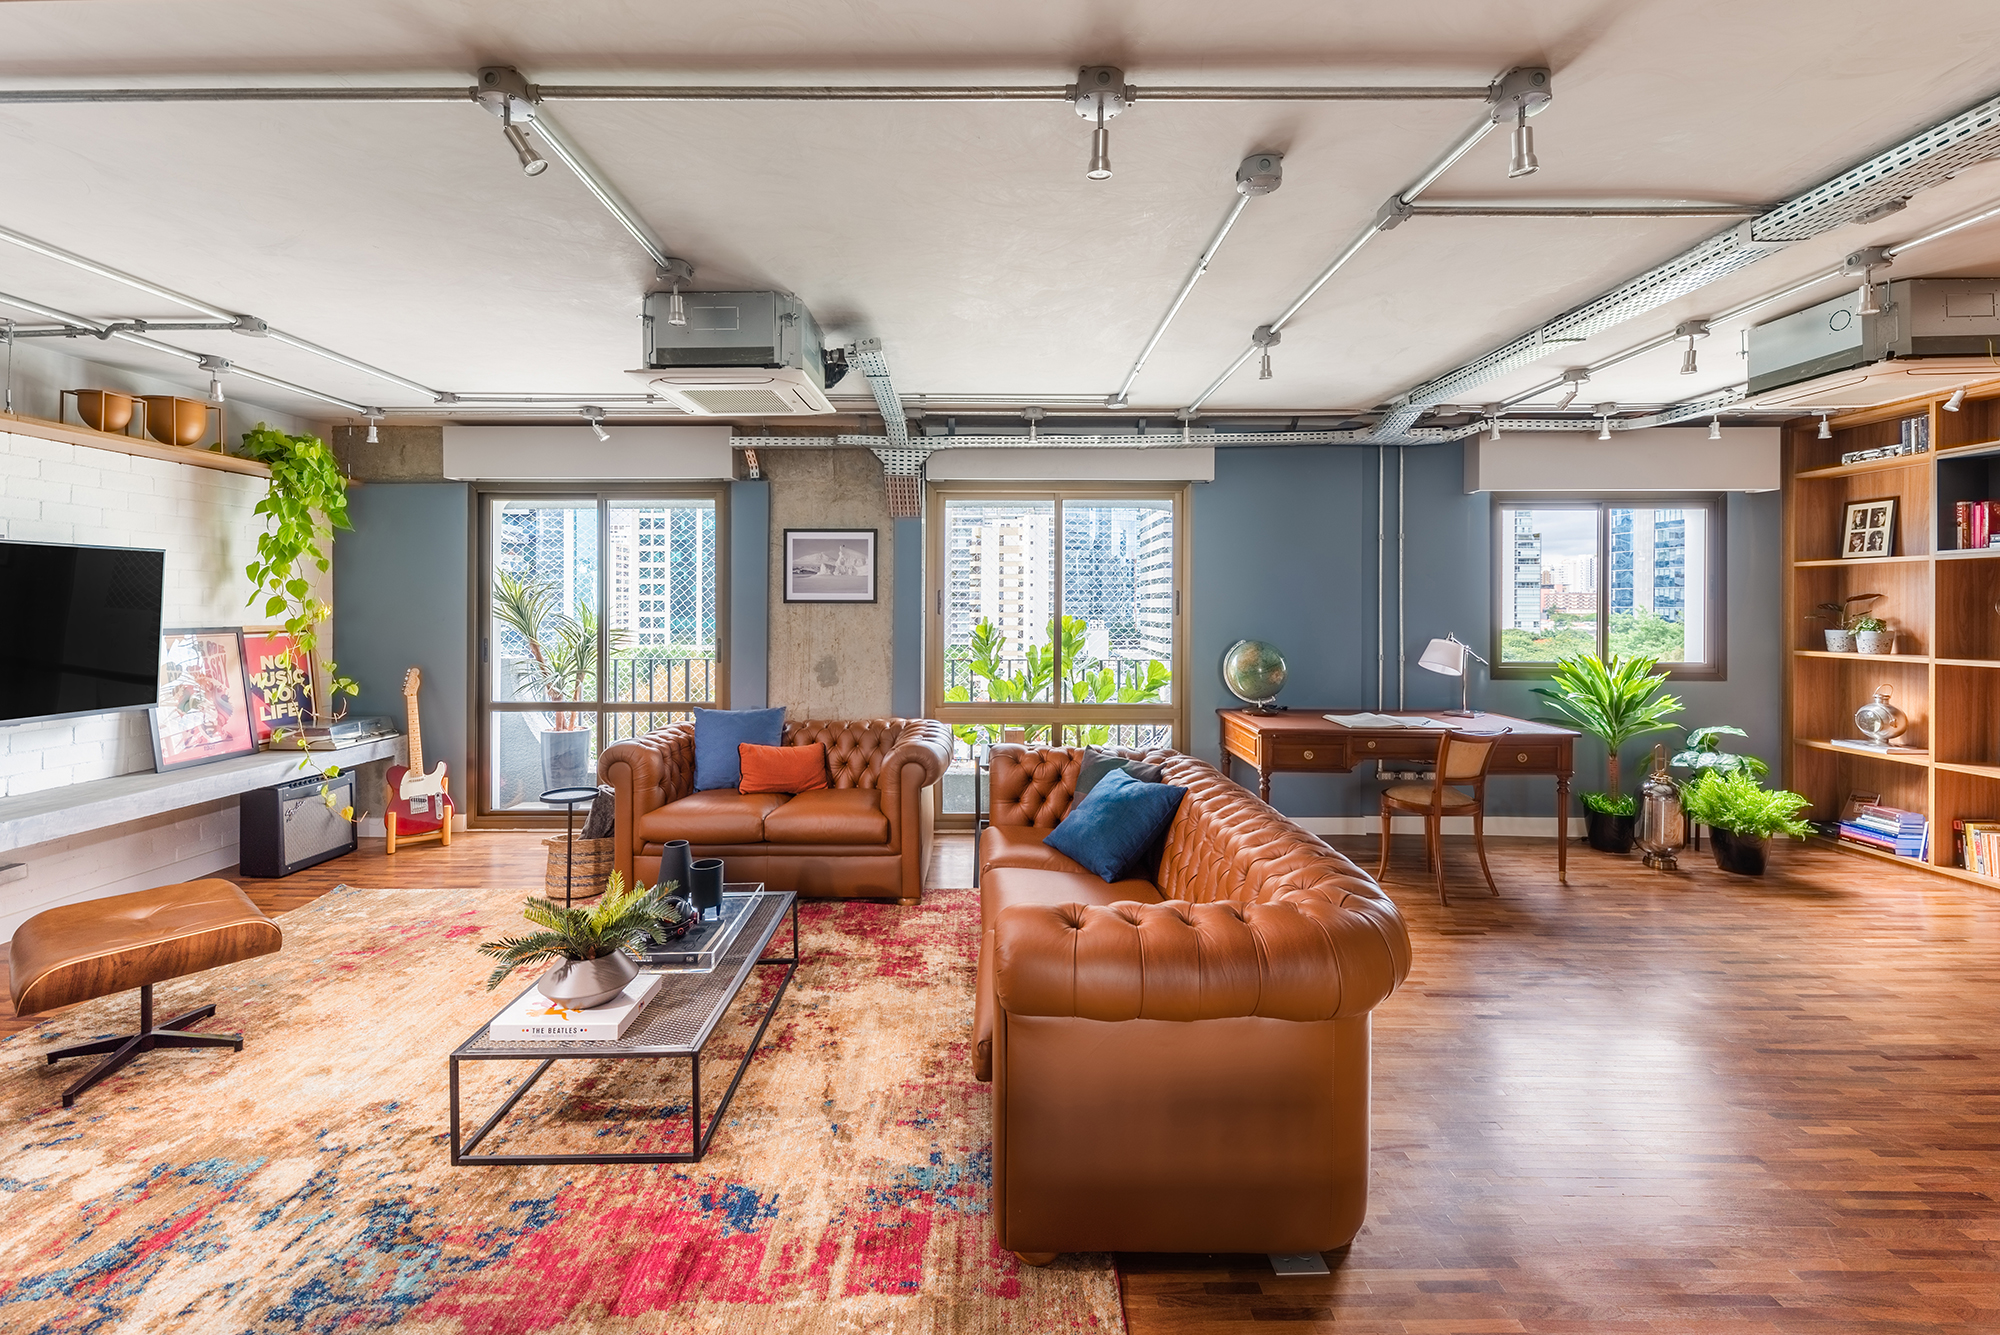 Estilo industrial e elementos clássicos se unem em apartamento de 130 m². Projeto de Pietro Terlizzi. Na foto, sala com tv, parede de tiles e sofá cheestfield.